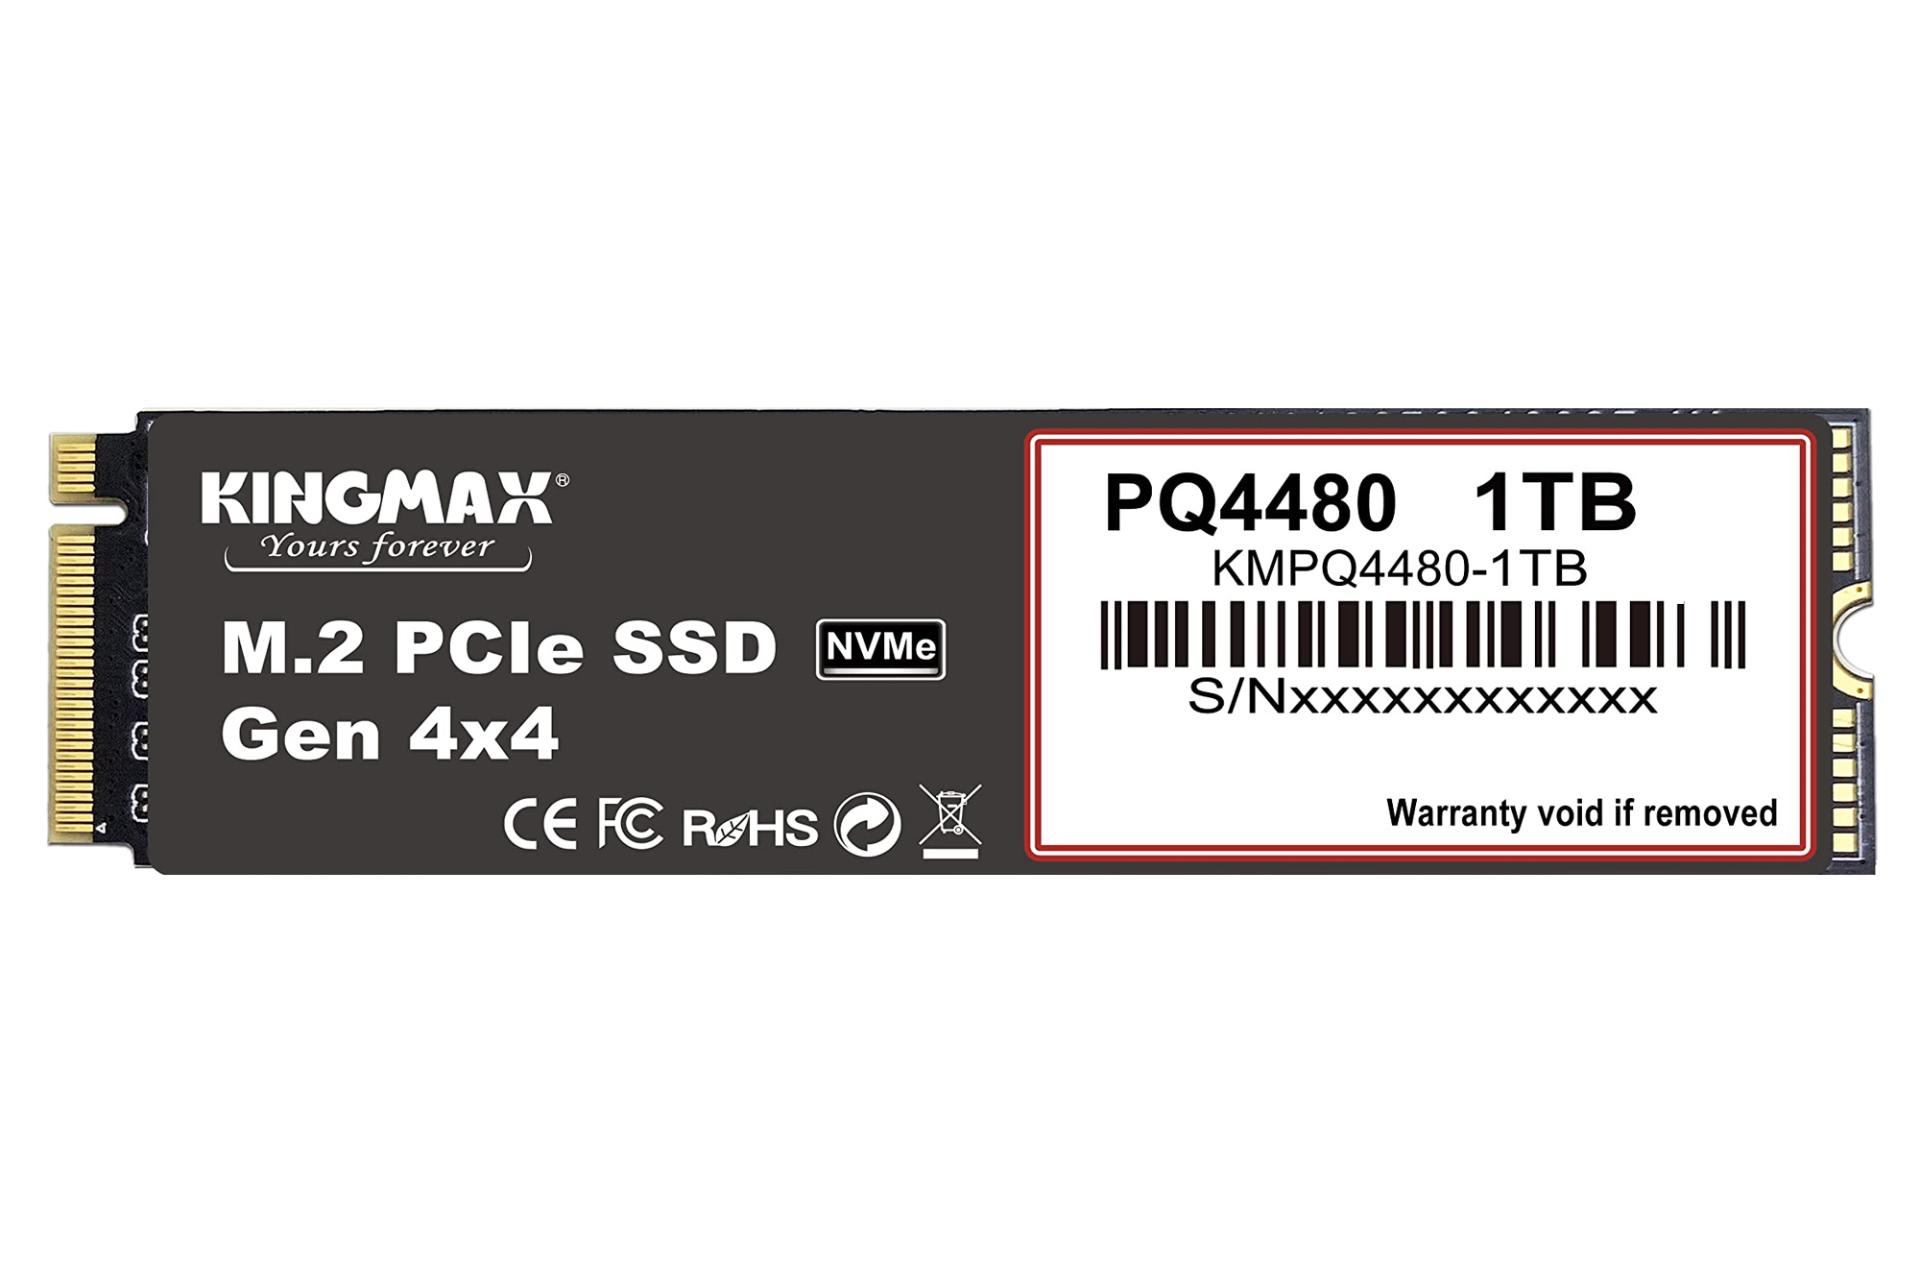 مرجع متخصصين ايران ابعاد SSD كينگ مكس PQ4480 NVMe M.2 ظرفيت 1 ترابايت